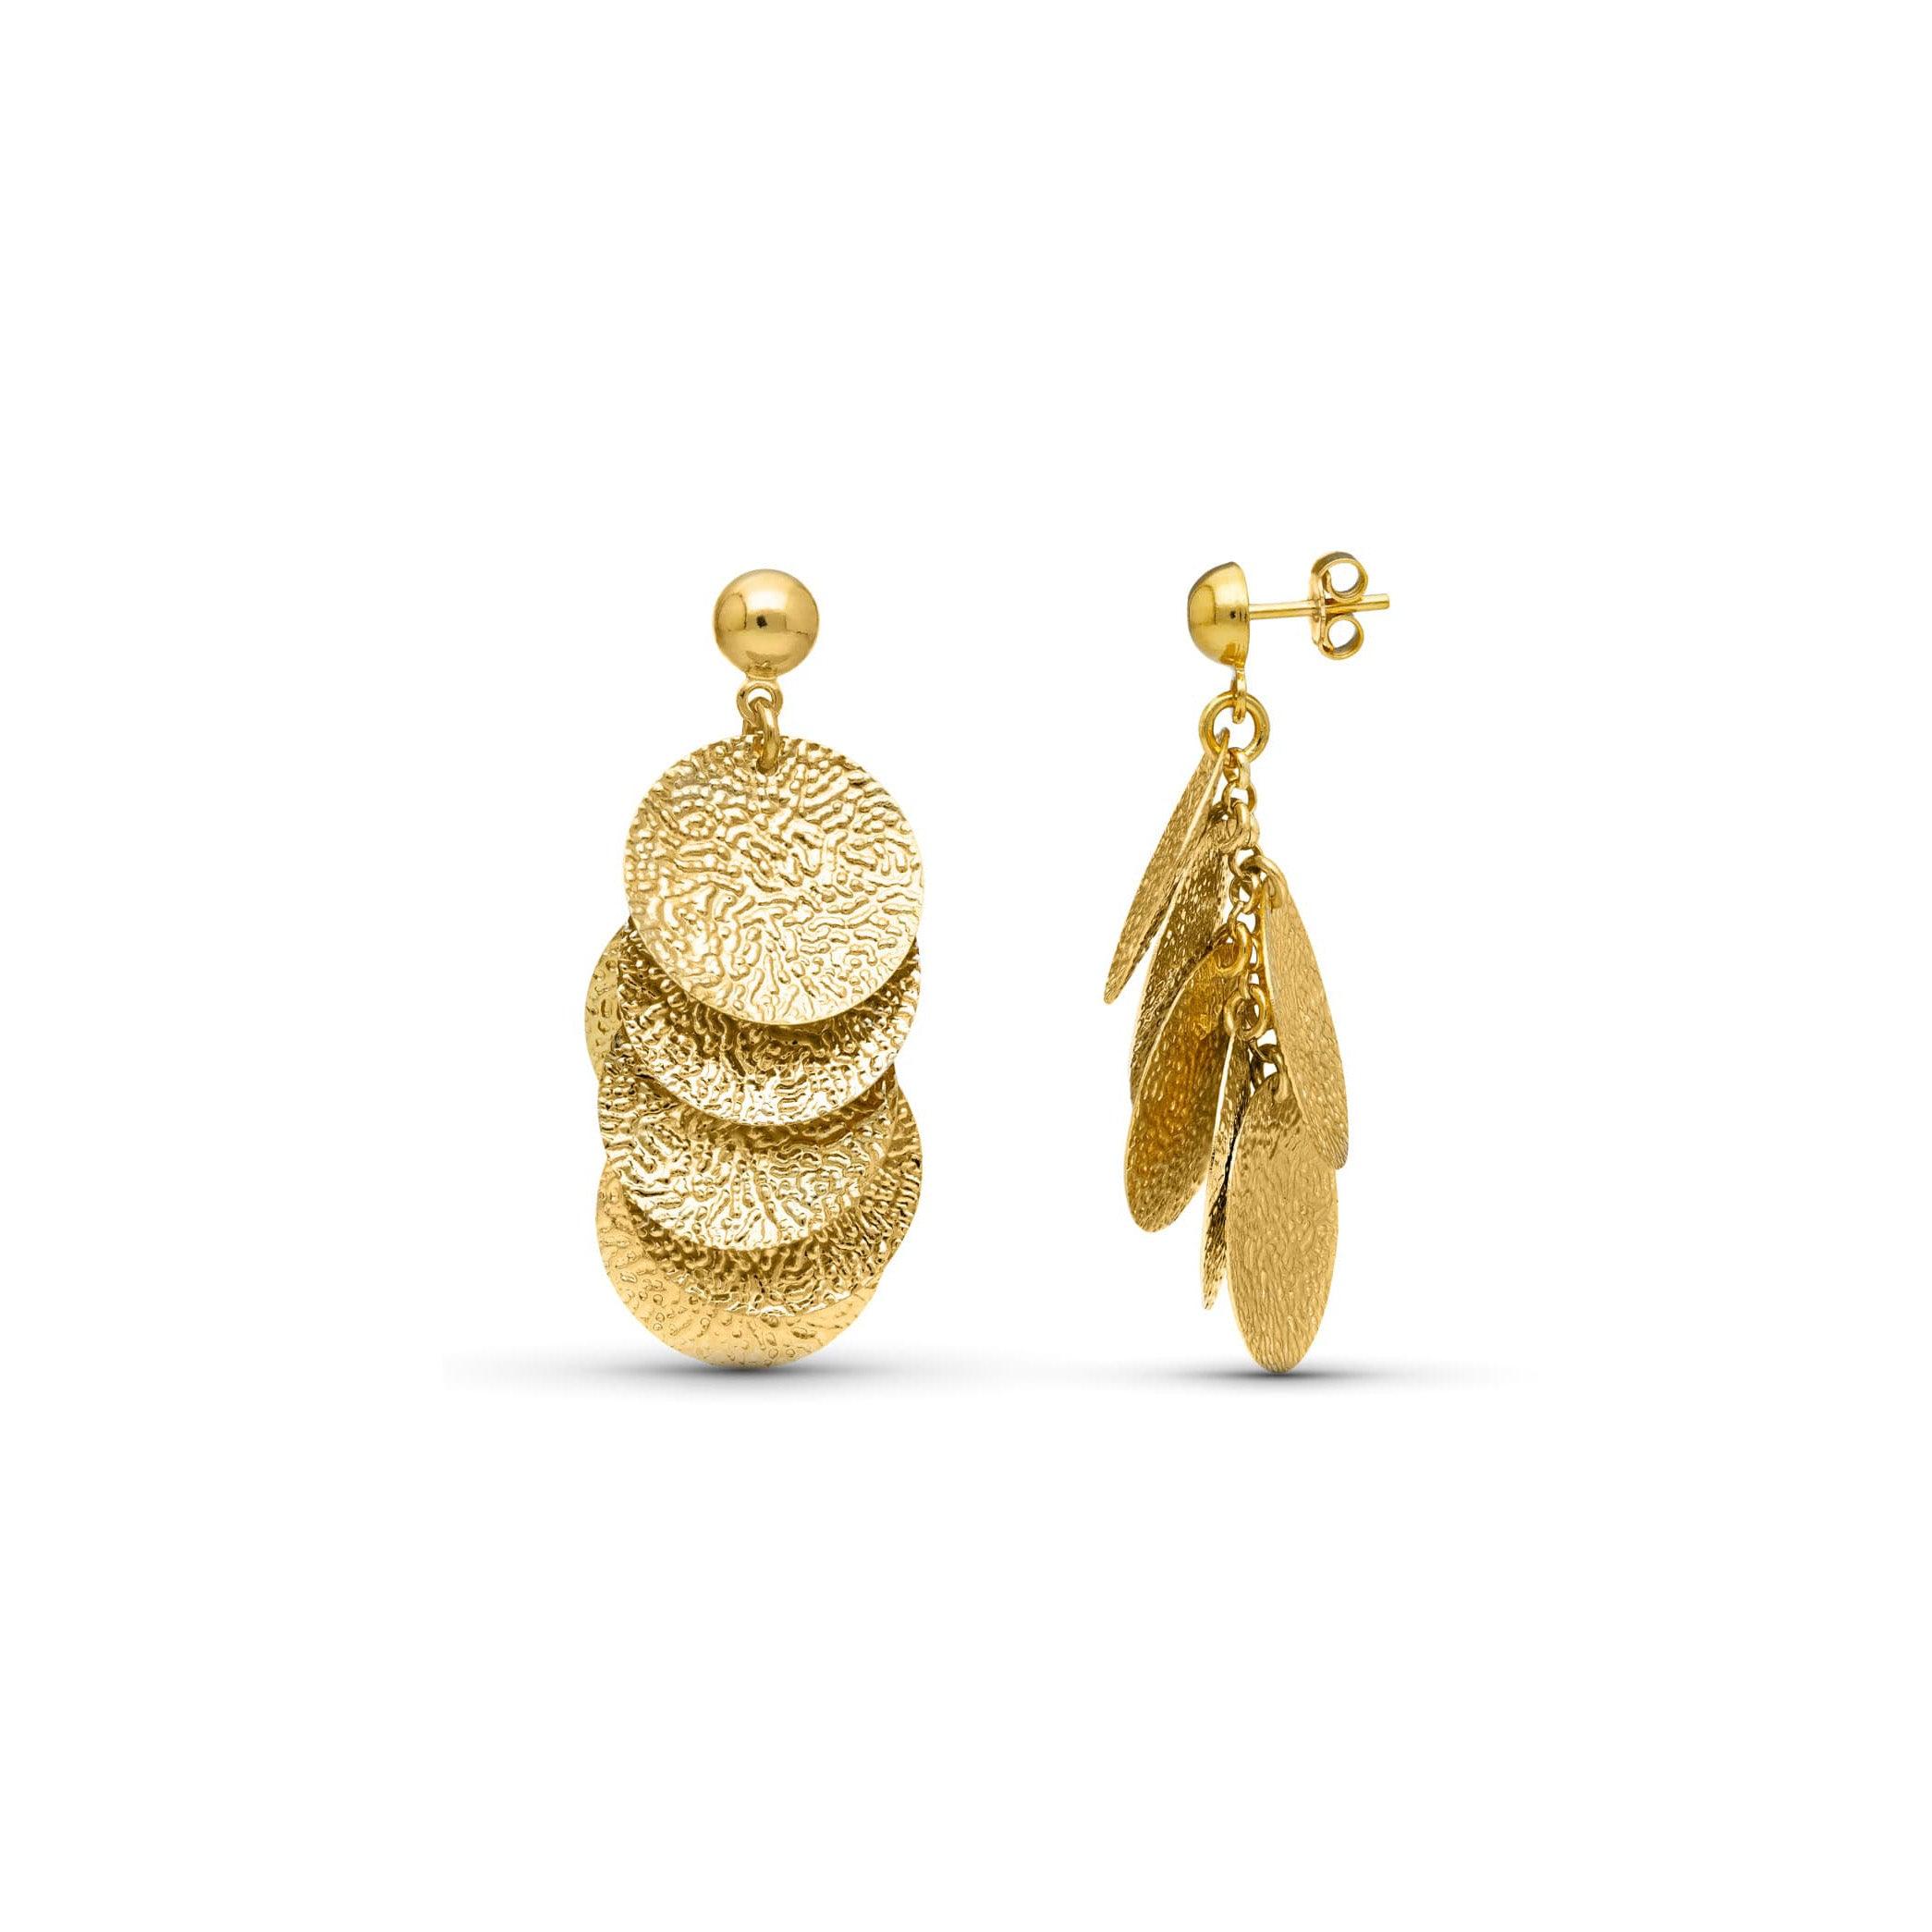 Boucles d'oreilles "Harmonie" en or jaune 18 carats, finition finement martelée - Maison Gabriel